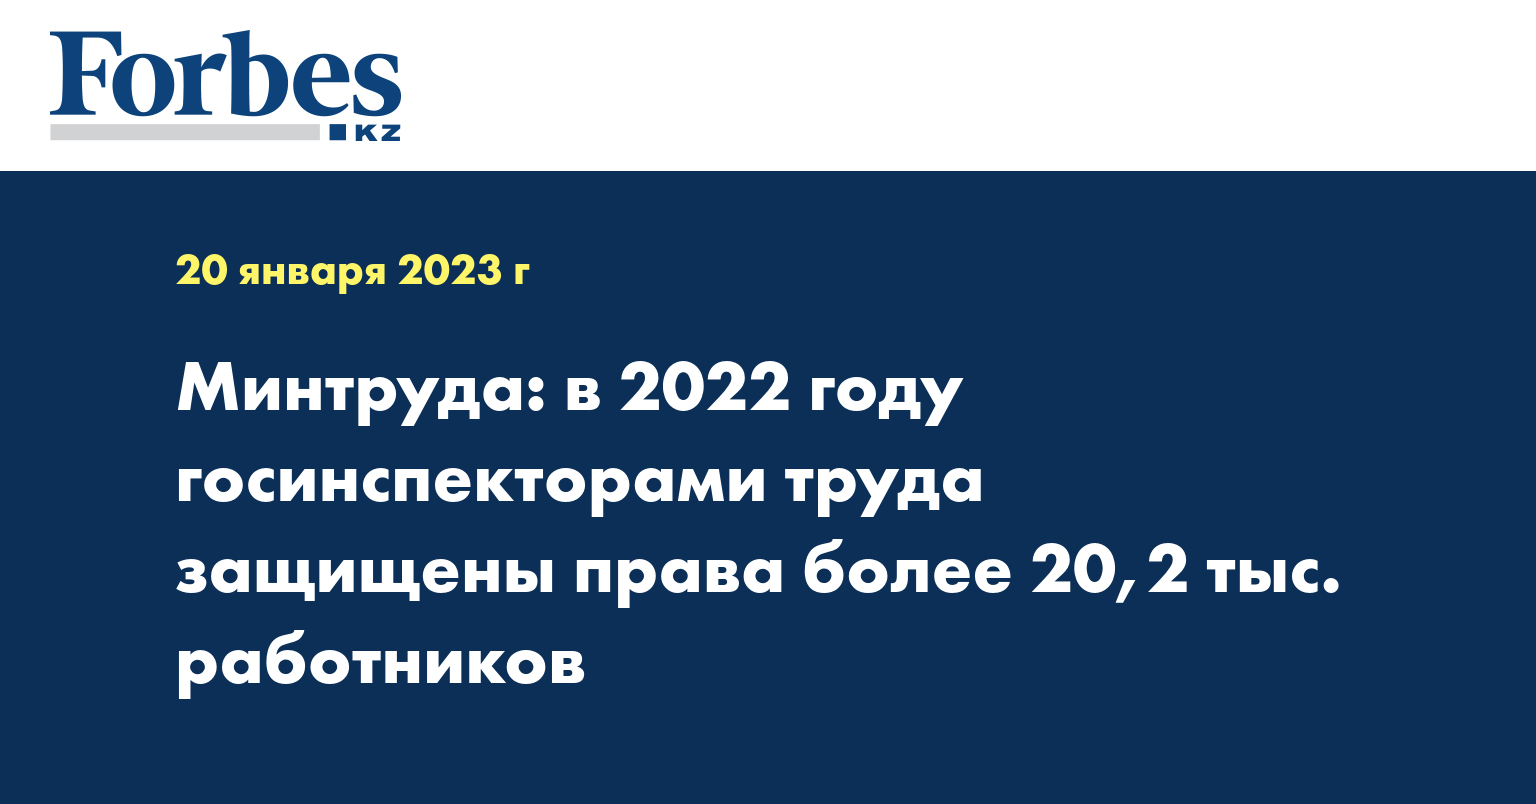 Минтруда: в 2022 году госинспекторами труда защищены права более 20,2 тыс. работников